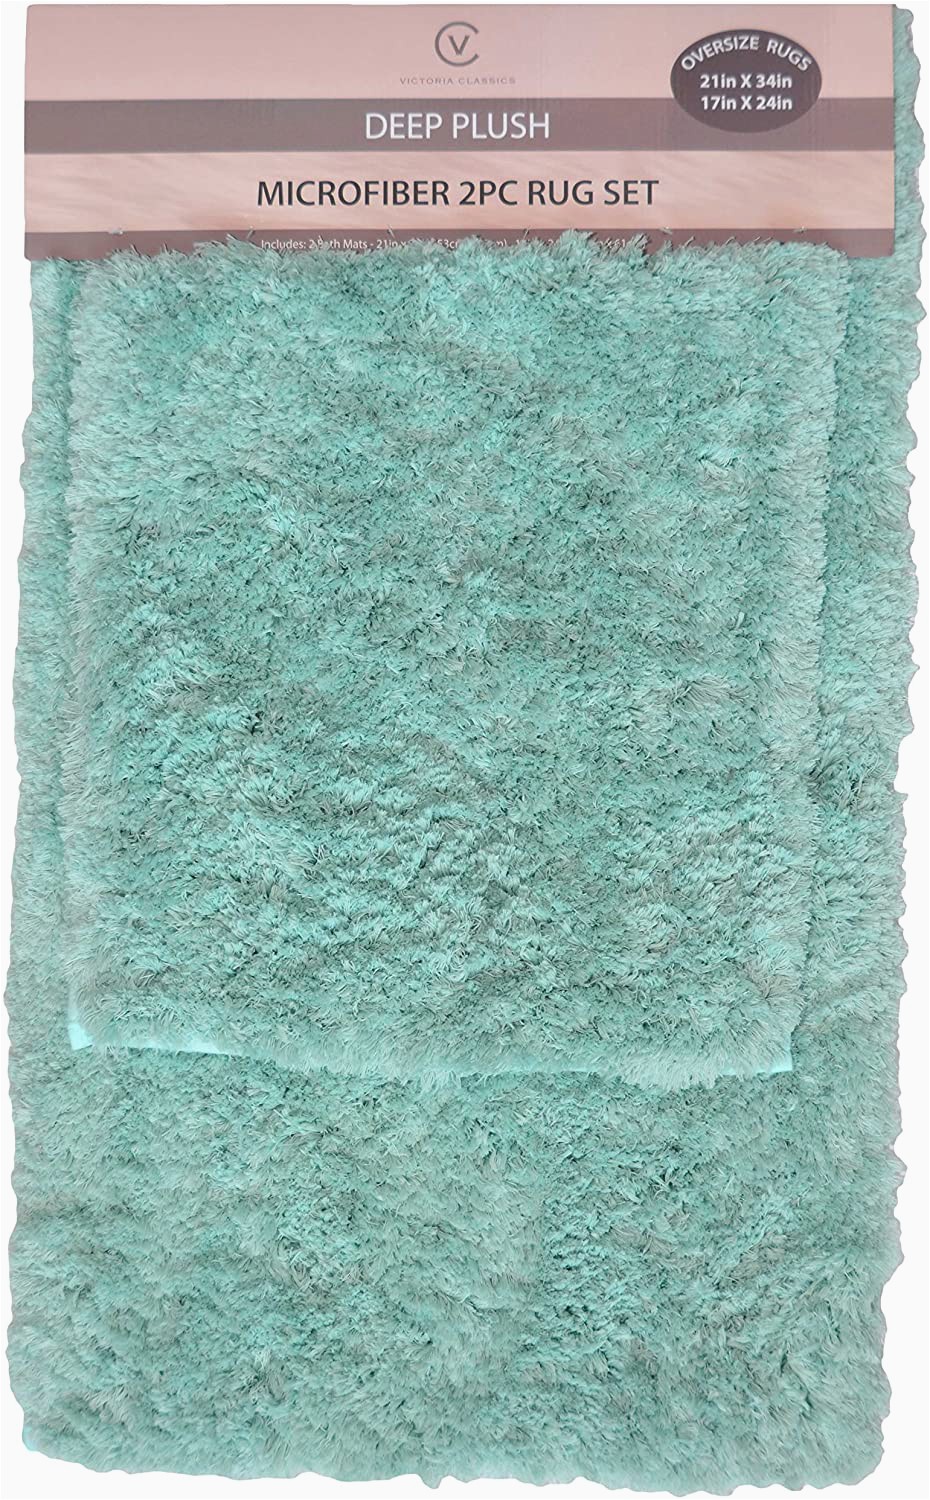 Seafoam Green Bathroom Rug Sets Amazon Victoria Classics 2 Pc Blue Bath Mat Rug Set